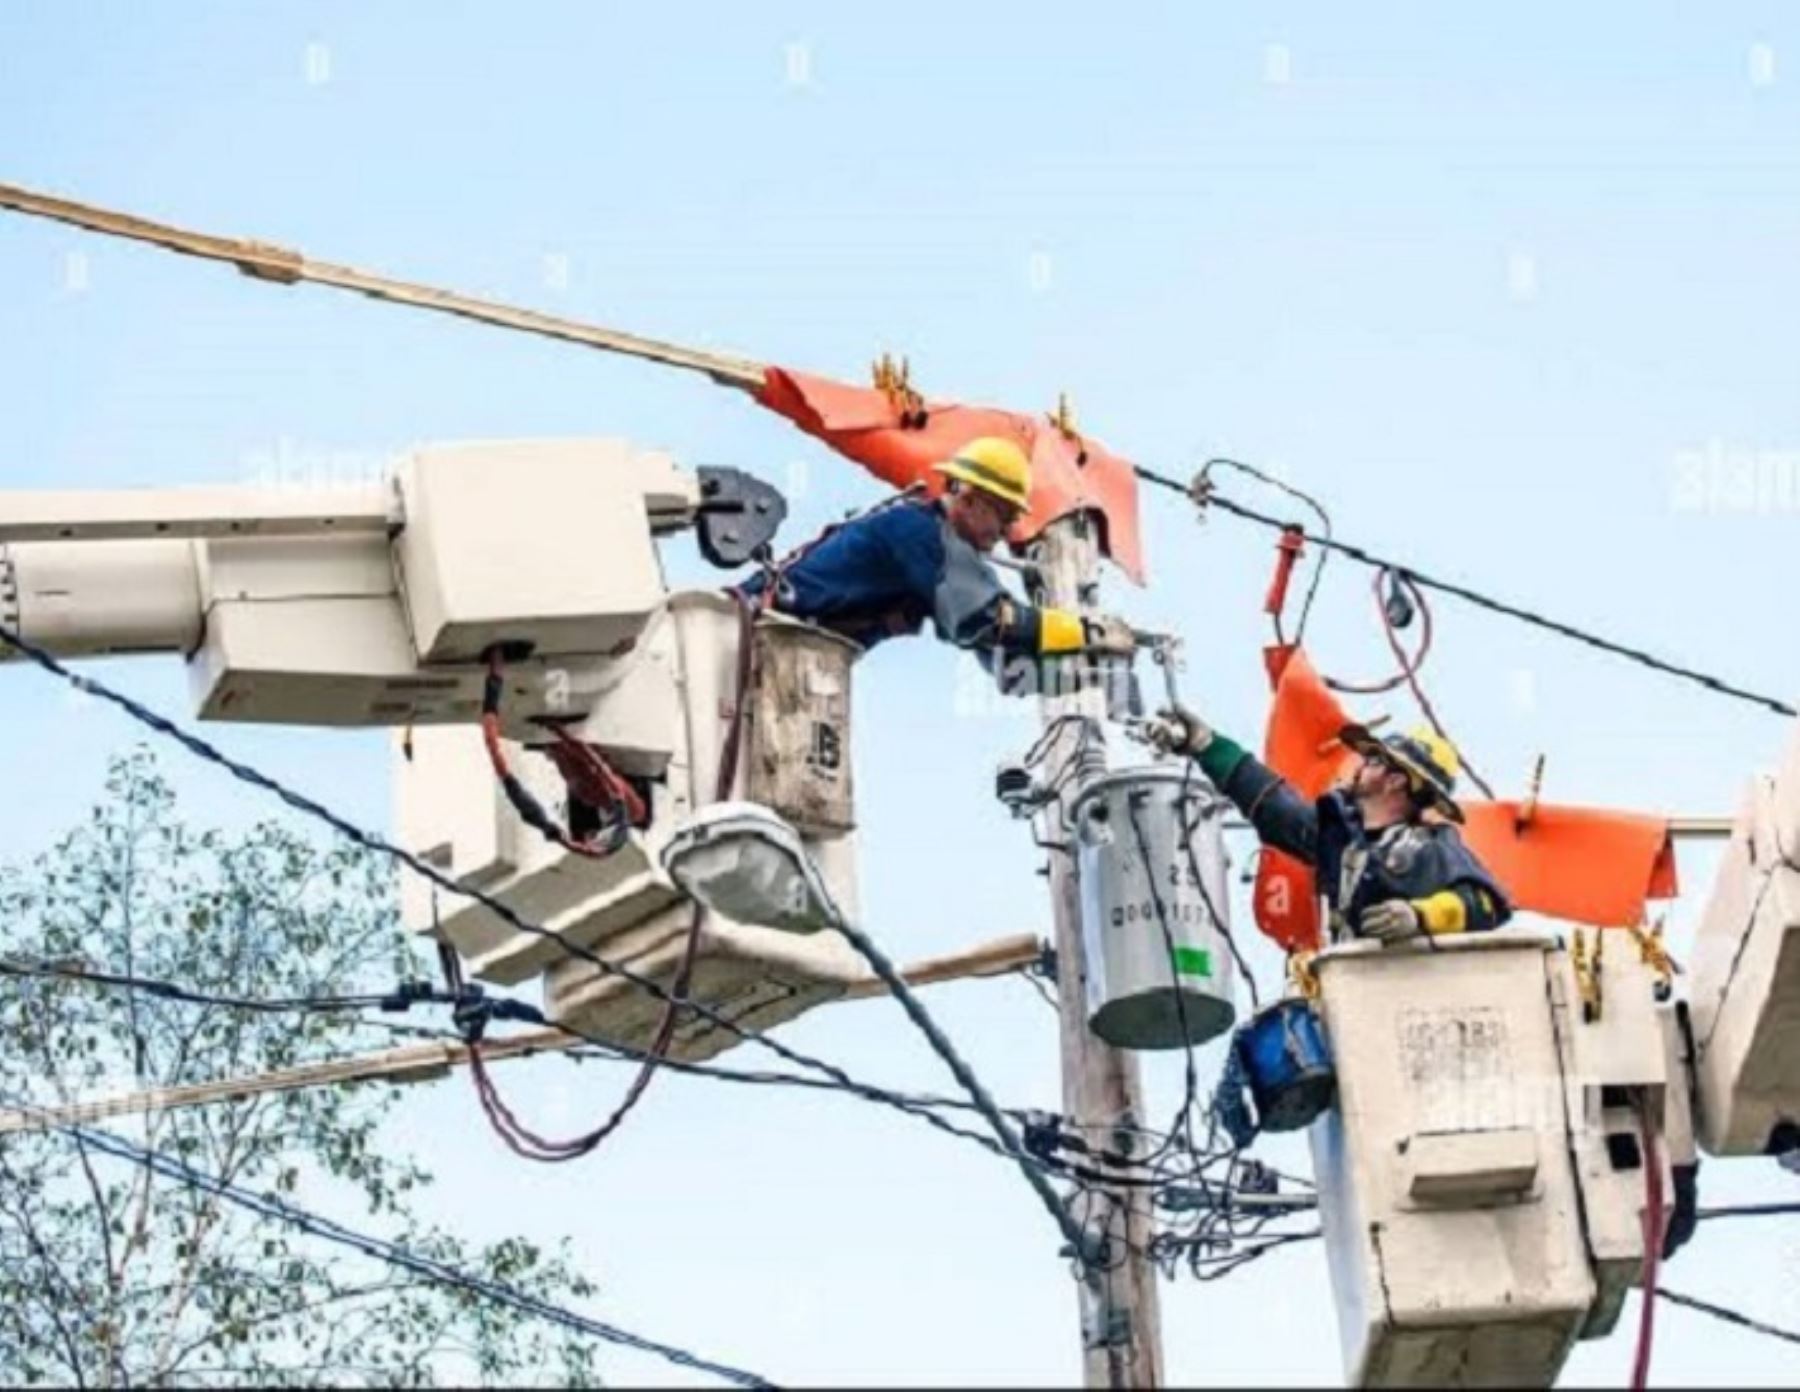 Un total de siete distritos, dos en Lambayeque y cinco en Cajamarca, se verán afectados por el corte del servicio eléctrico programado para el domingo 28 de abril. ANDINA/Difusión